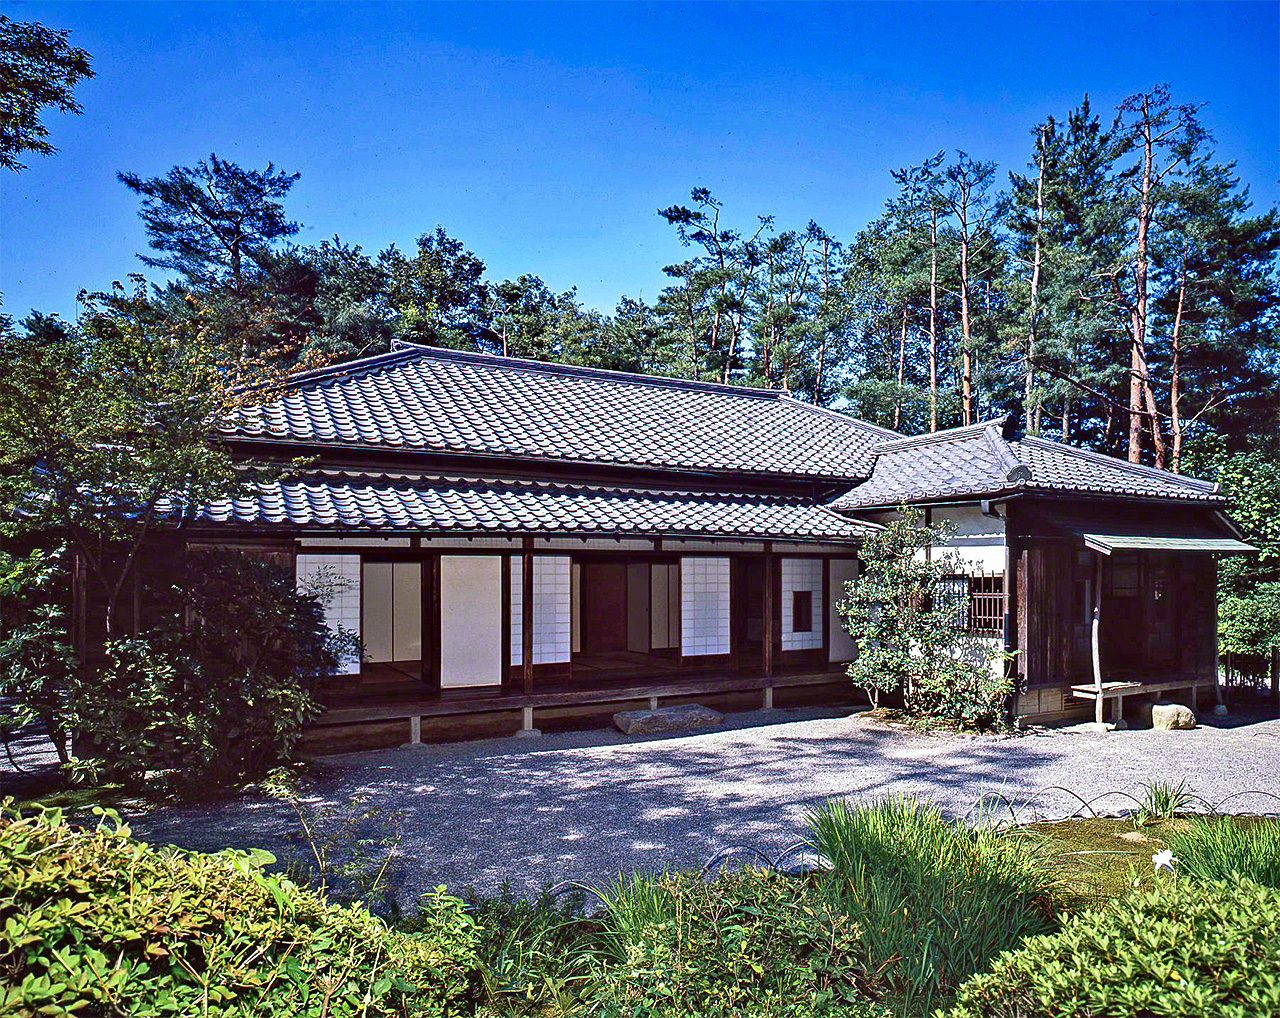 La vivienda construida originalmente en 1887 en Sendagi (distrito tokiota de Bunkyō) donde moraron, en épocas distintas, Mori Ōgai y Natsume Sōseki.